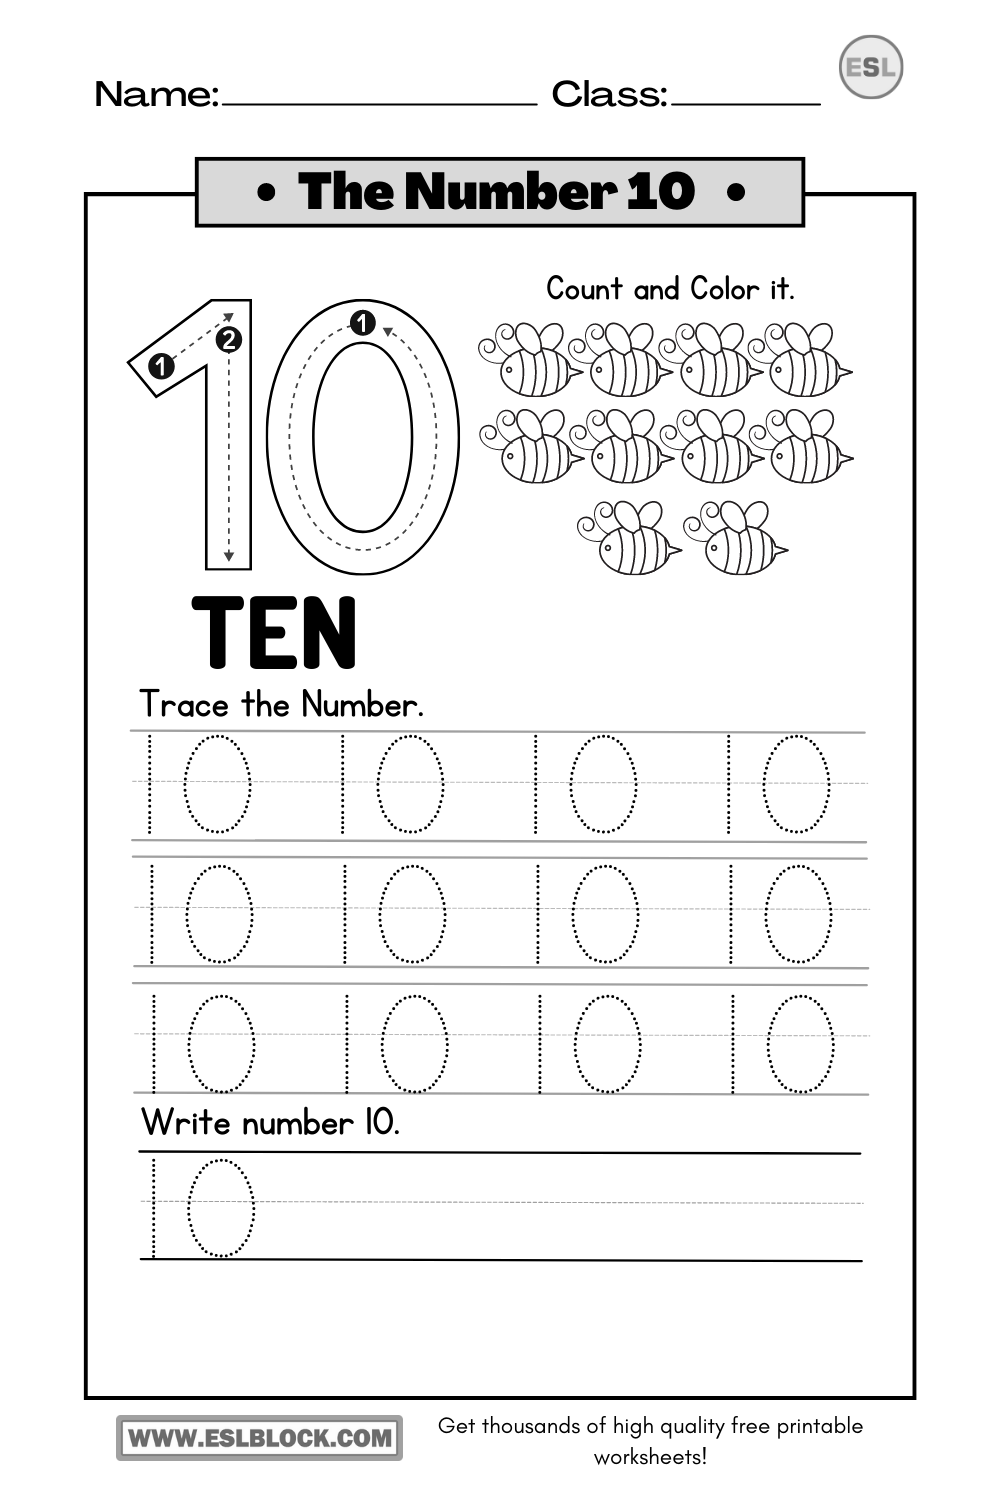 Basic Mathematics Worksheets, Free Worksheets, Kindergarten Worksheets, Math Worksheets, Number 10 Printable Worksheets, Preschool Math Worksheets, Tracing 10 Worksheets, Tracing Number 10 Printable Worksheets, Tracing Number 10 Worksheets, Tracing the Number 10 Printable, Tracing Worksheets, Worksheets